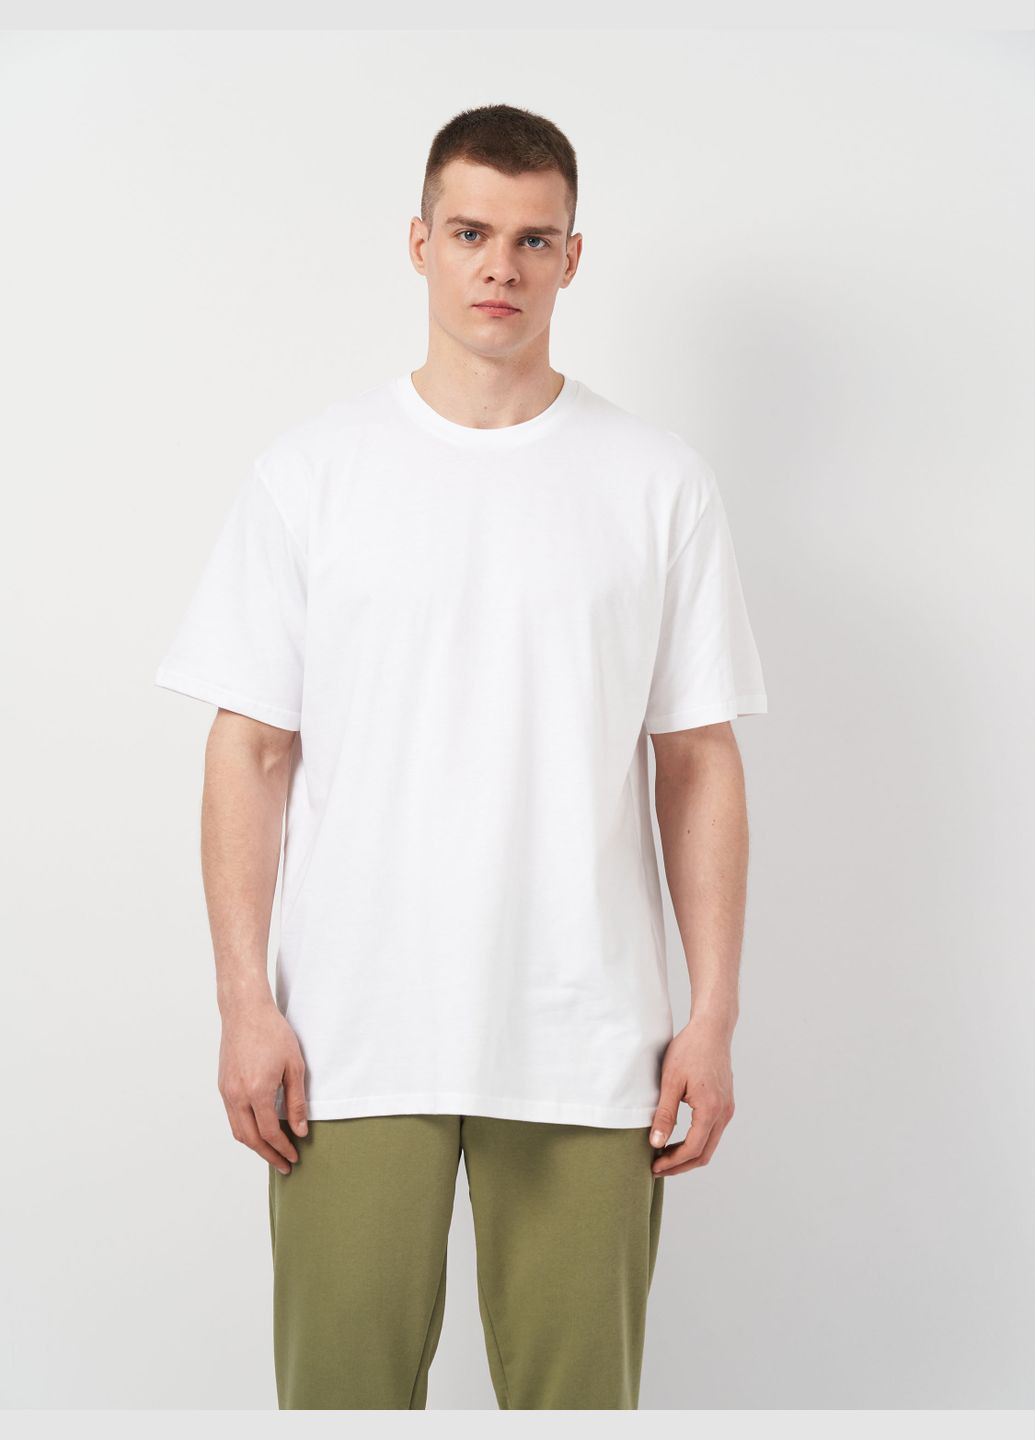 Белая футболка для мужчин базовая с коротким рукавом Роза